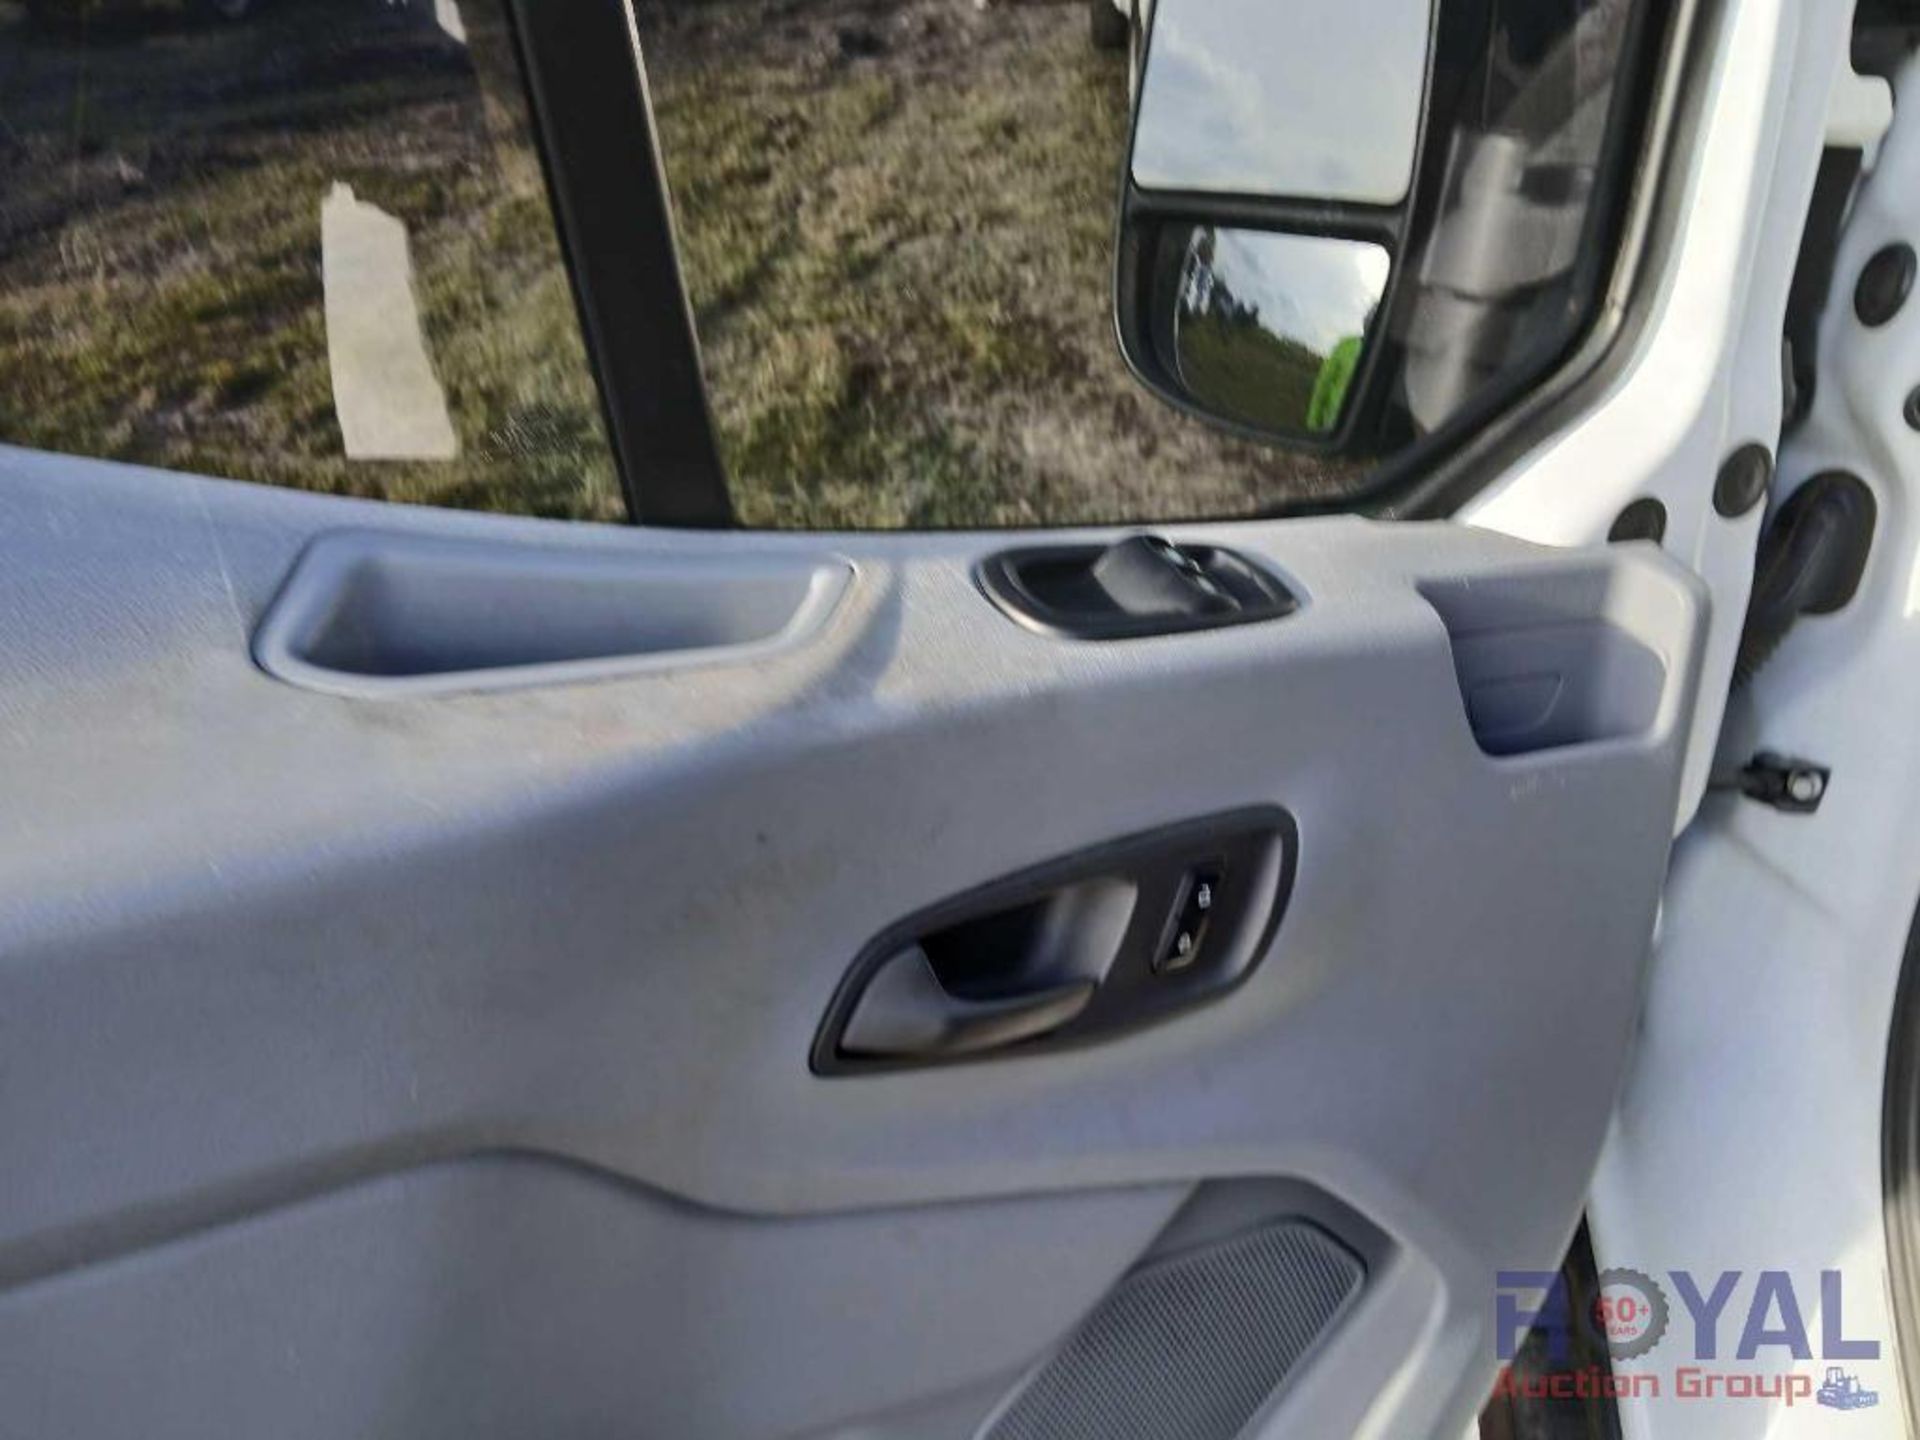 2016 Ford Transit 250 Cargo Van - Image 13 of 24